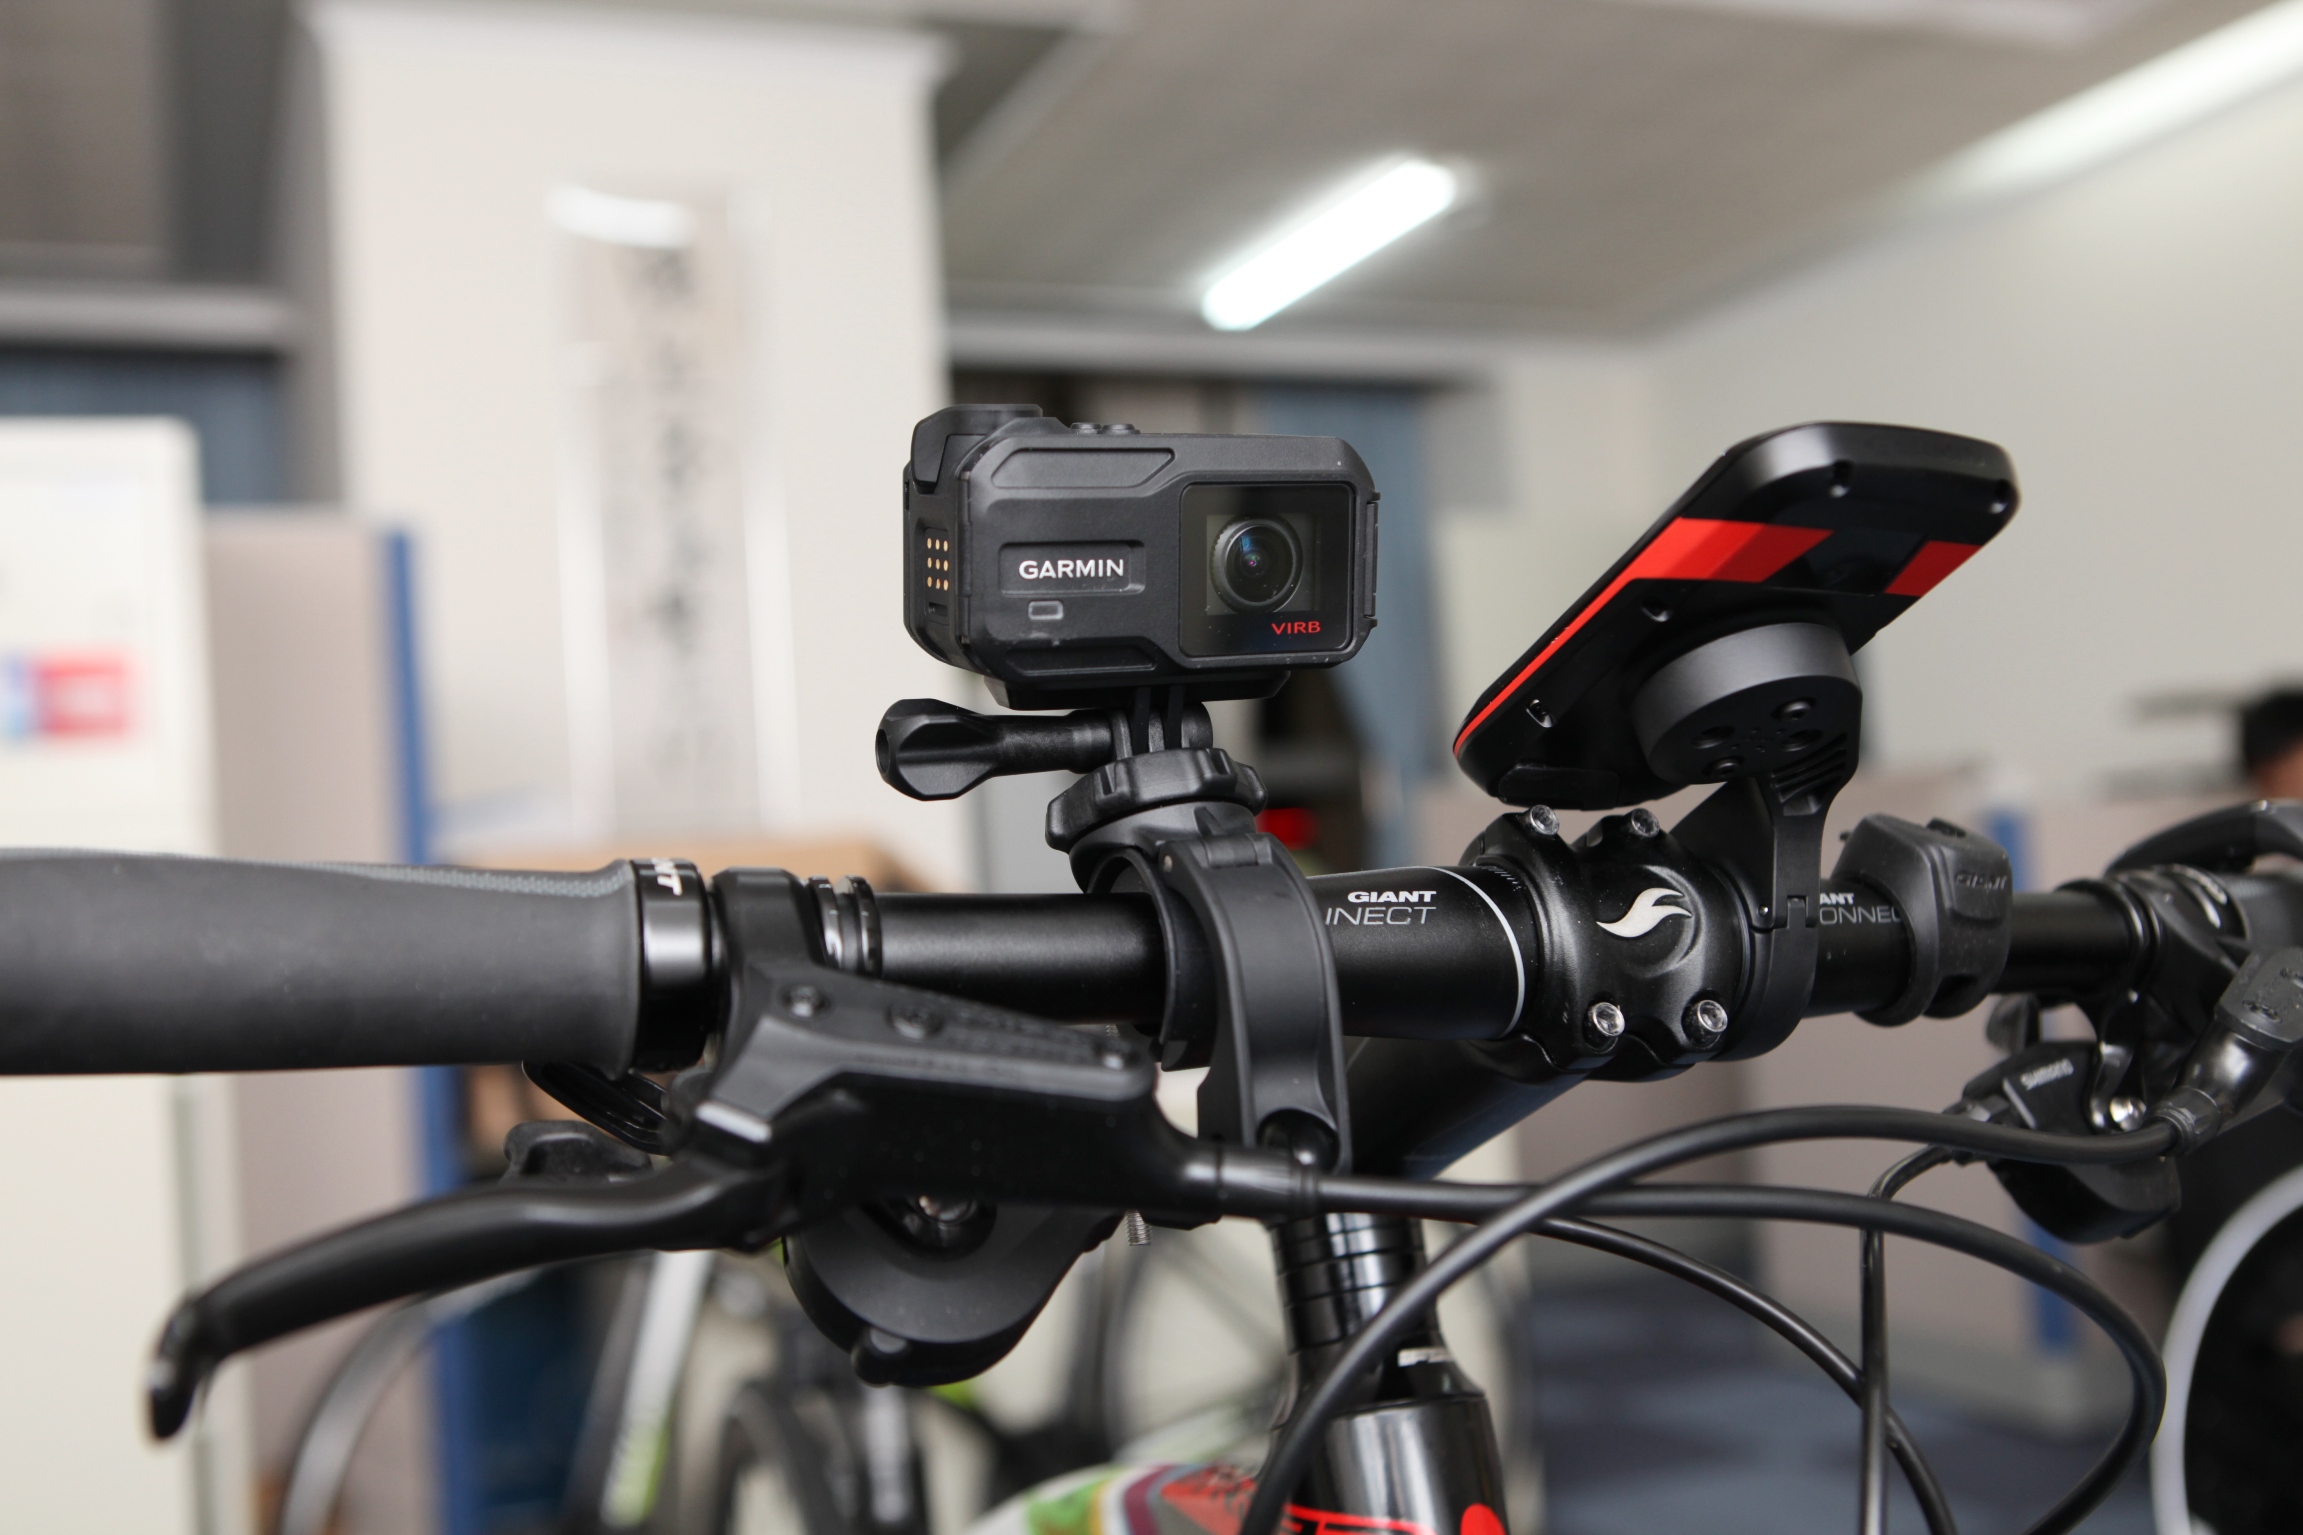 圖說三Garmin Edge1000自行車衛星導航提供雙城挑戰沿途導航指引VIRB XE HD高畫質運動攝影機具動態感知記錄生理數據在影片中完整重現380KM路程的真實感受